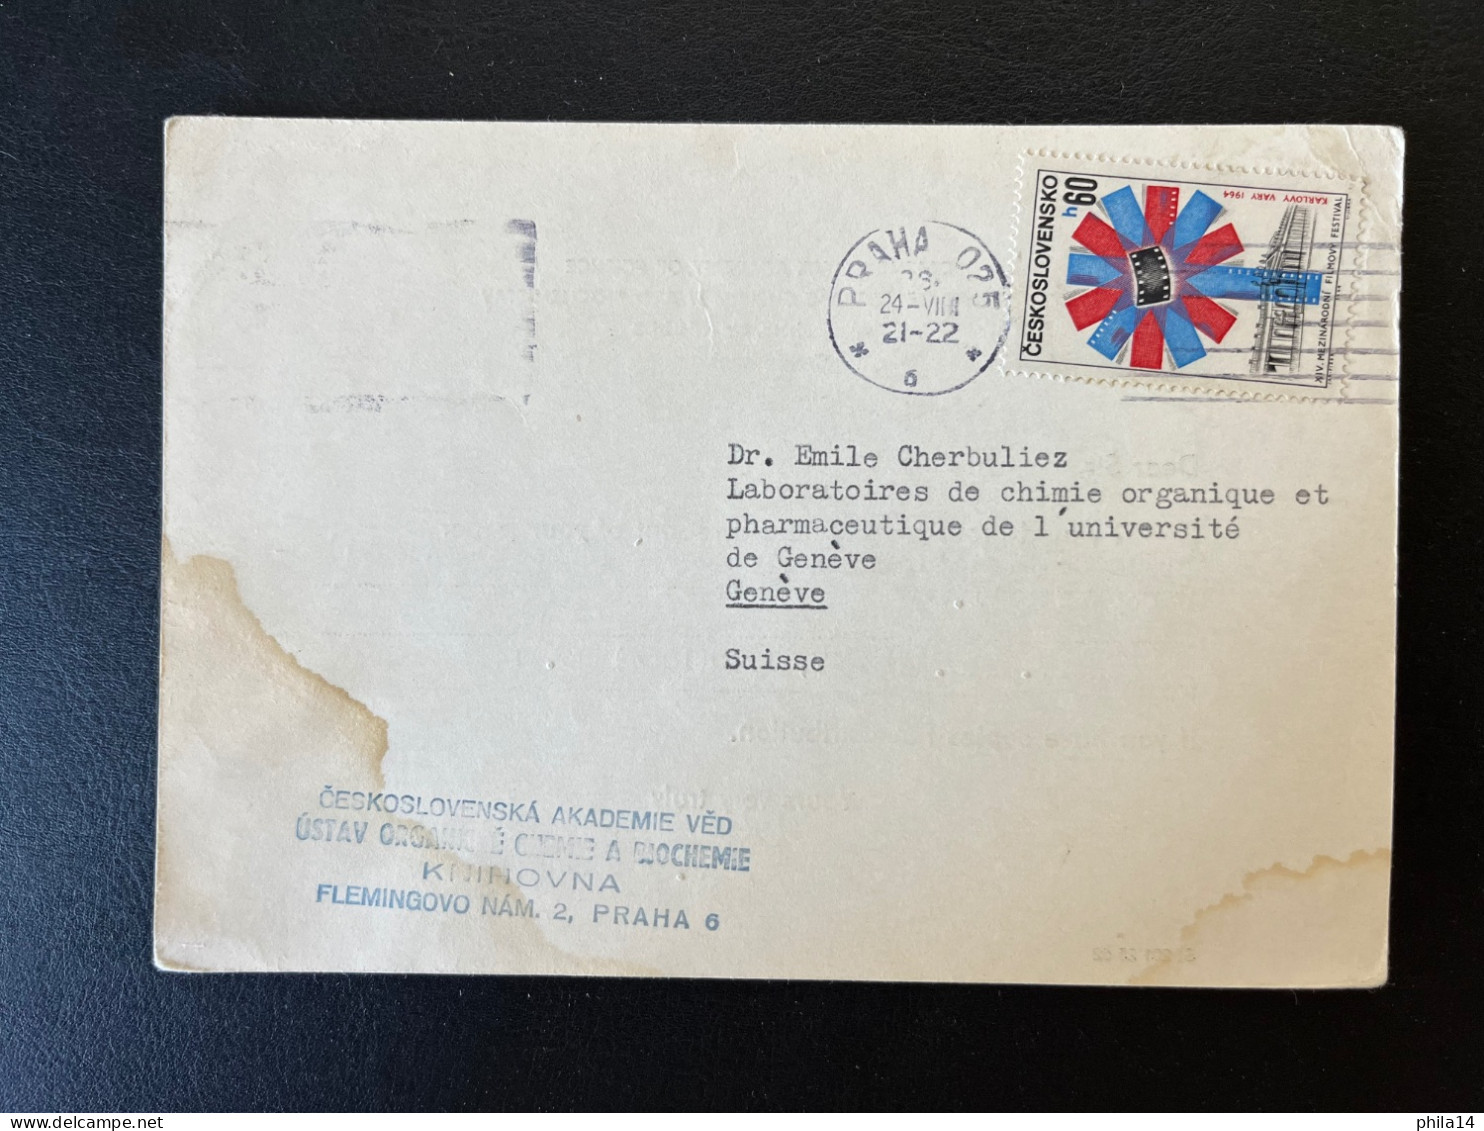 CARTE TCHECOSLOVAQUIE / PRAGUE PRAHA POUR GENEVE SUISSE 1964 / CZECHOSLOVAK ACADEMY OF SCIENCE - Lettres & Documents